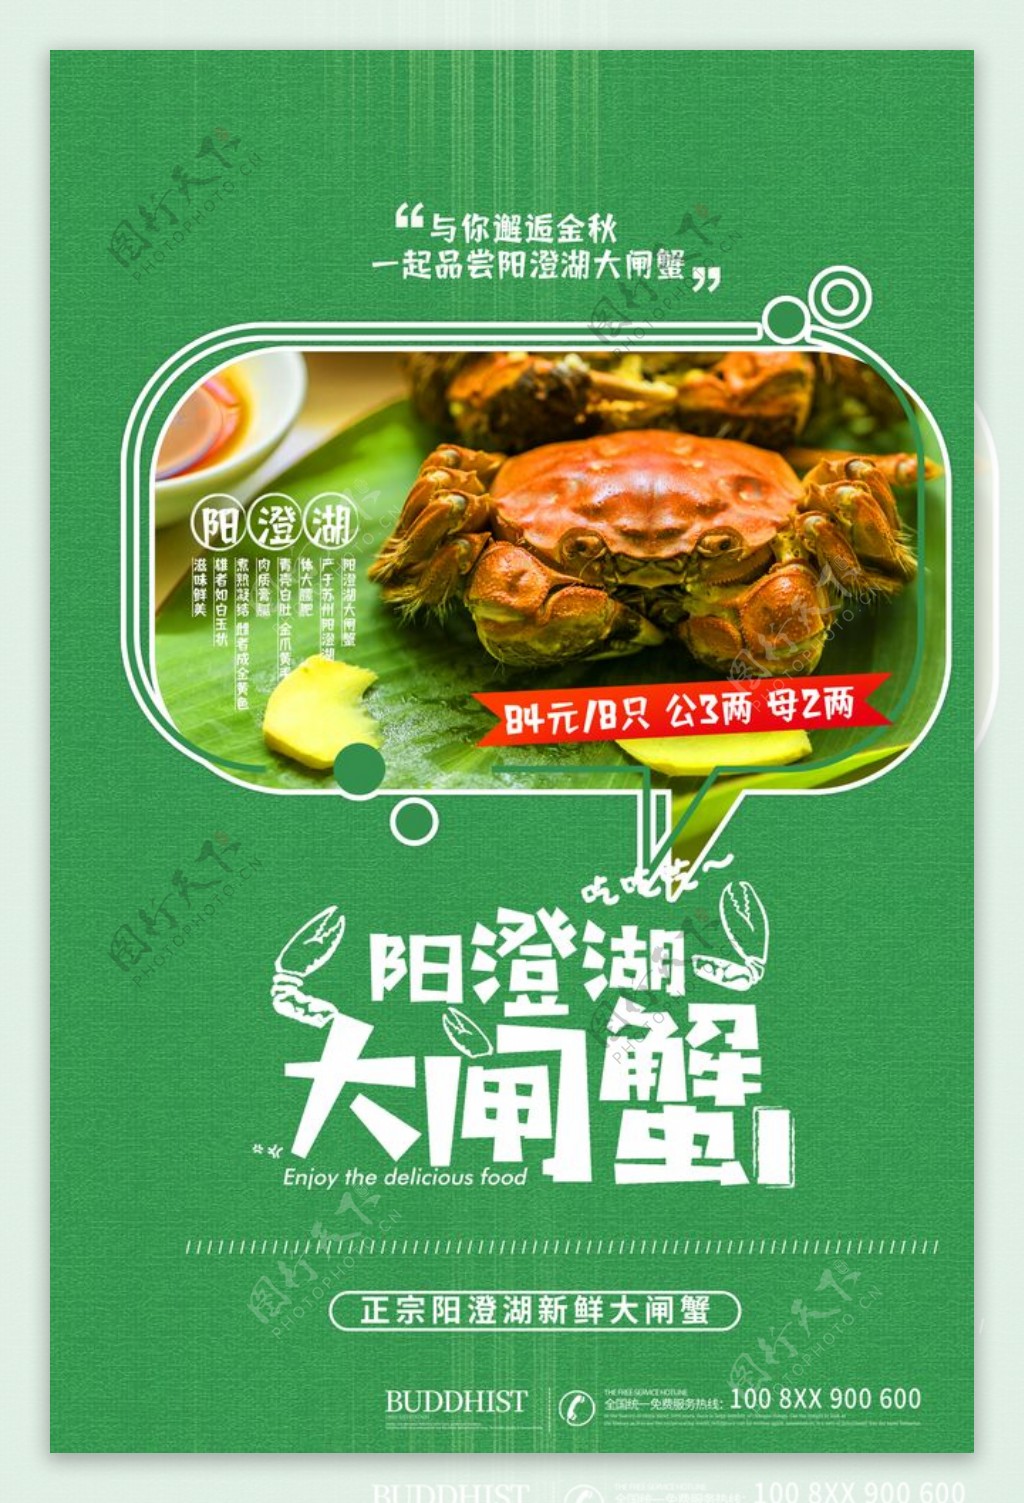 阳澄湖大闸蟹广告海报设计图片